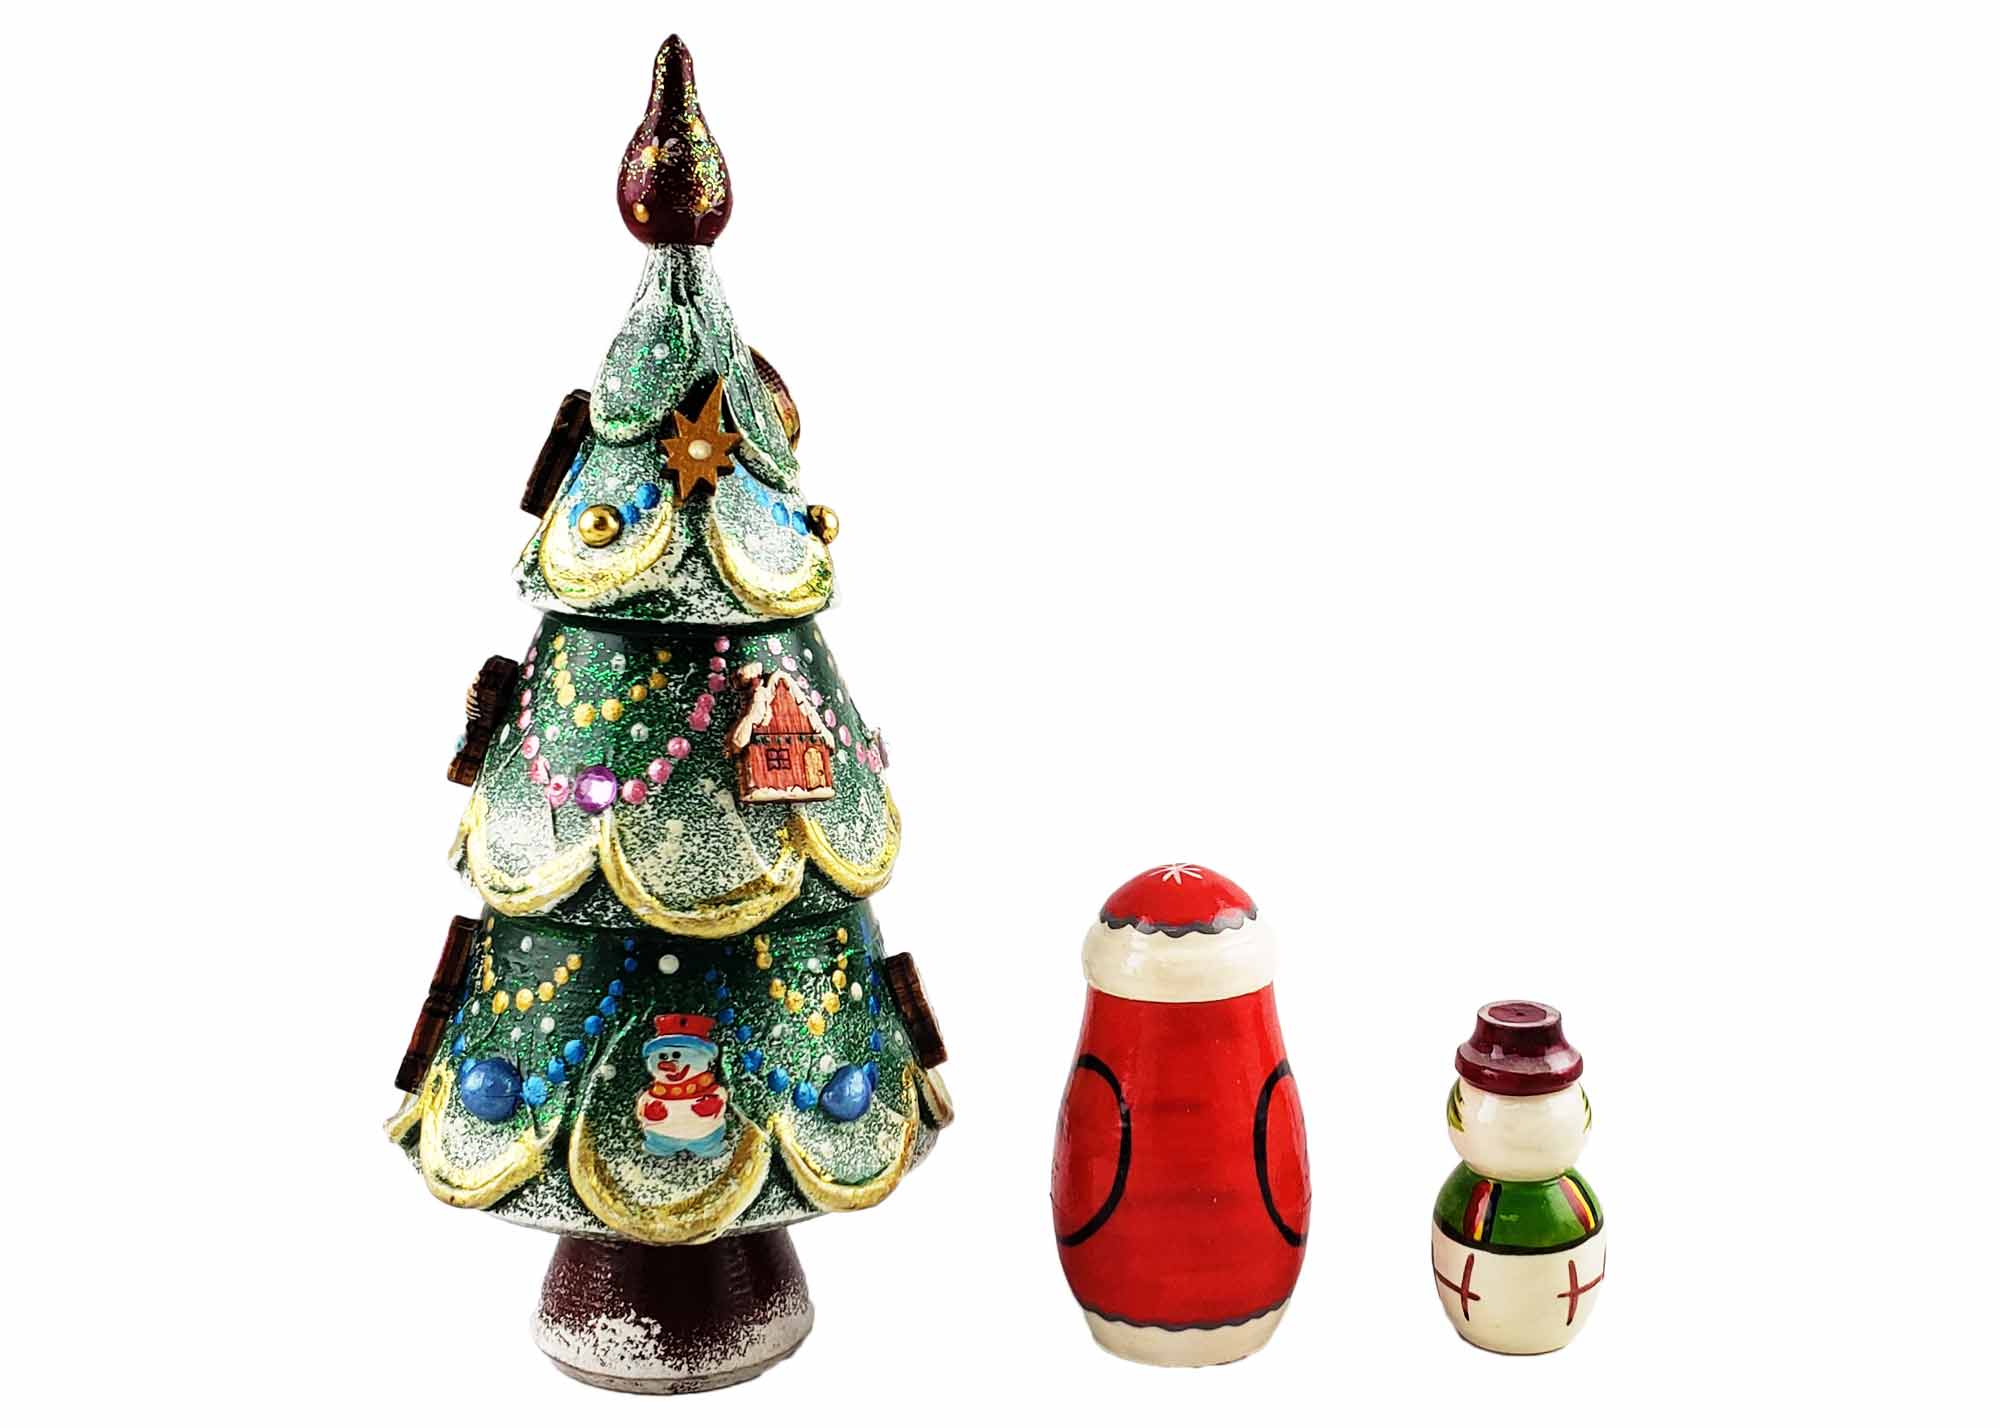 Buy Deluxe Christmas Tree Matryoshka with Toy Ornaments 3pc./5" at GoldenCockerel.com